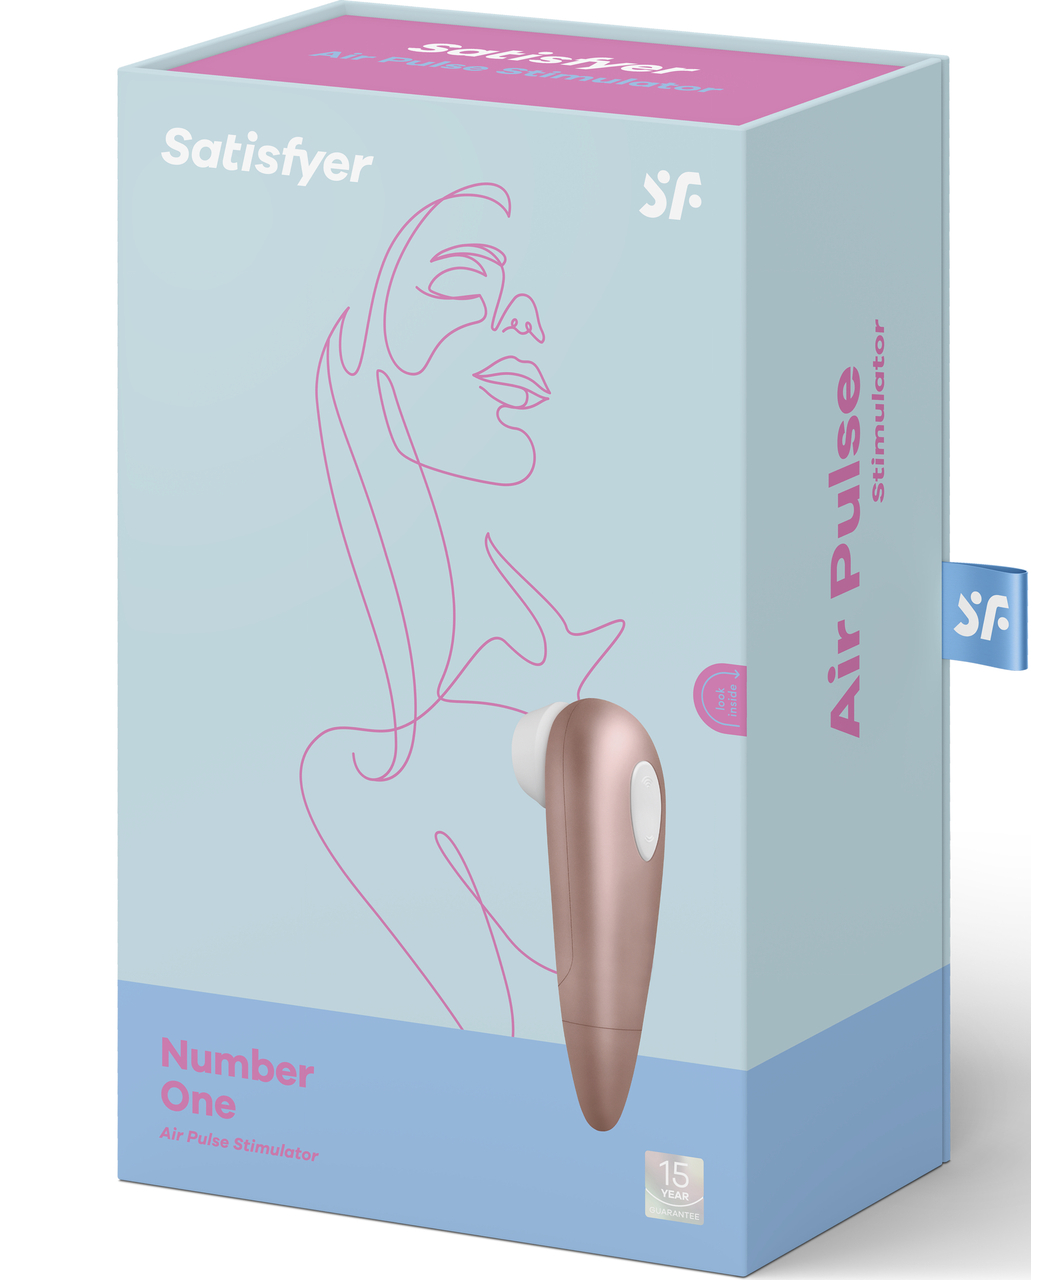 Satisfyer Number One clitoral stimulator